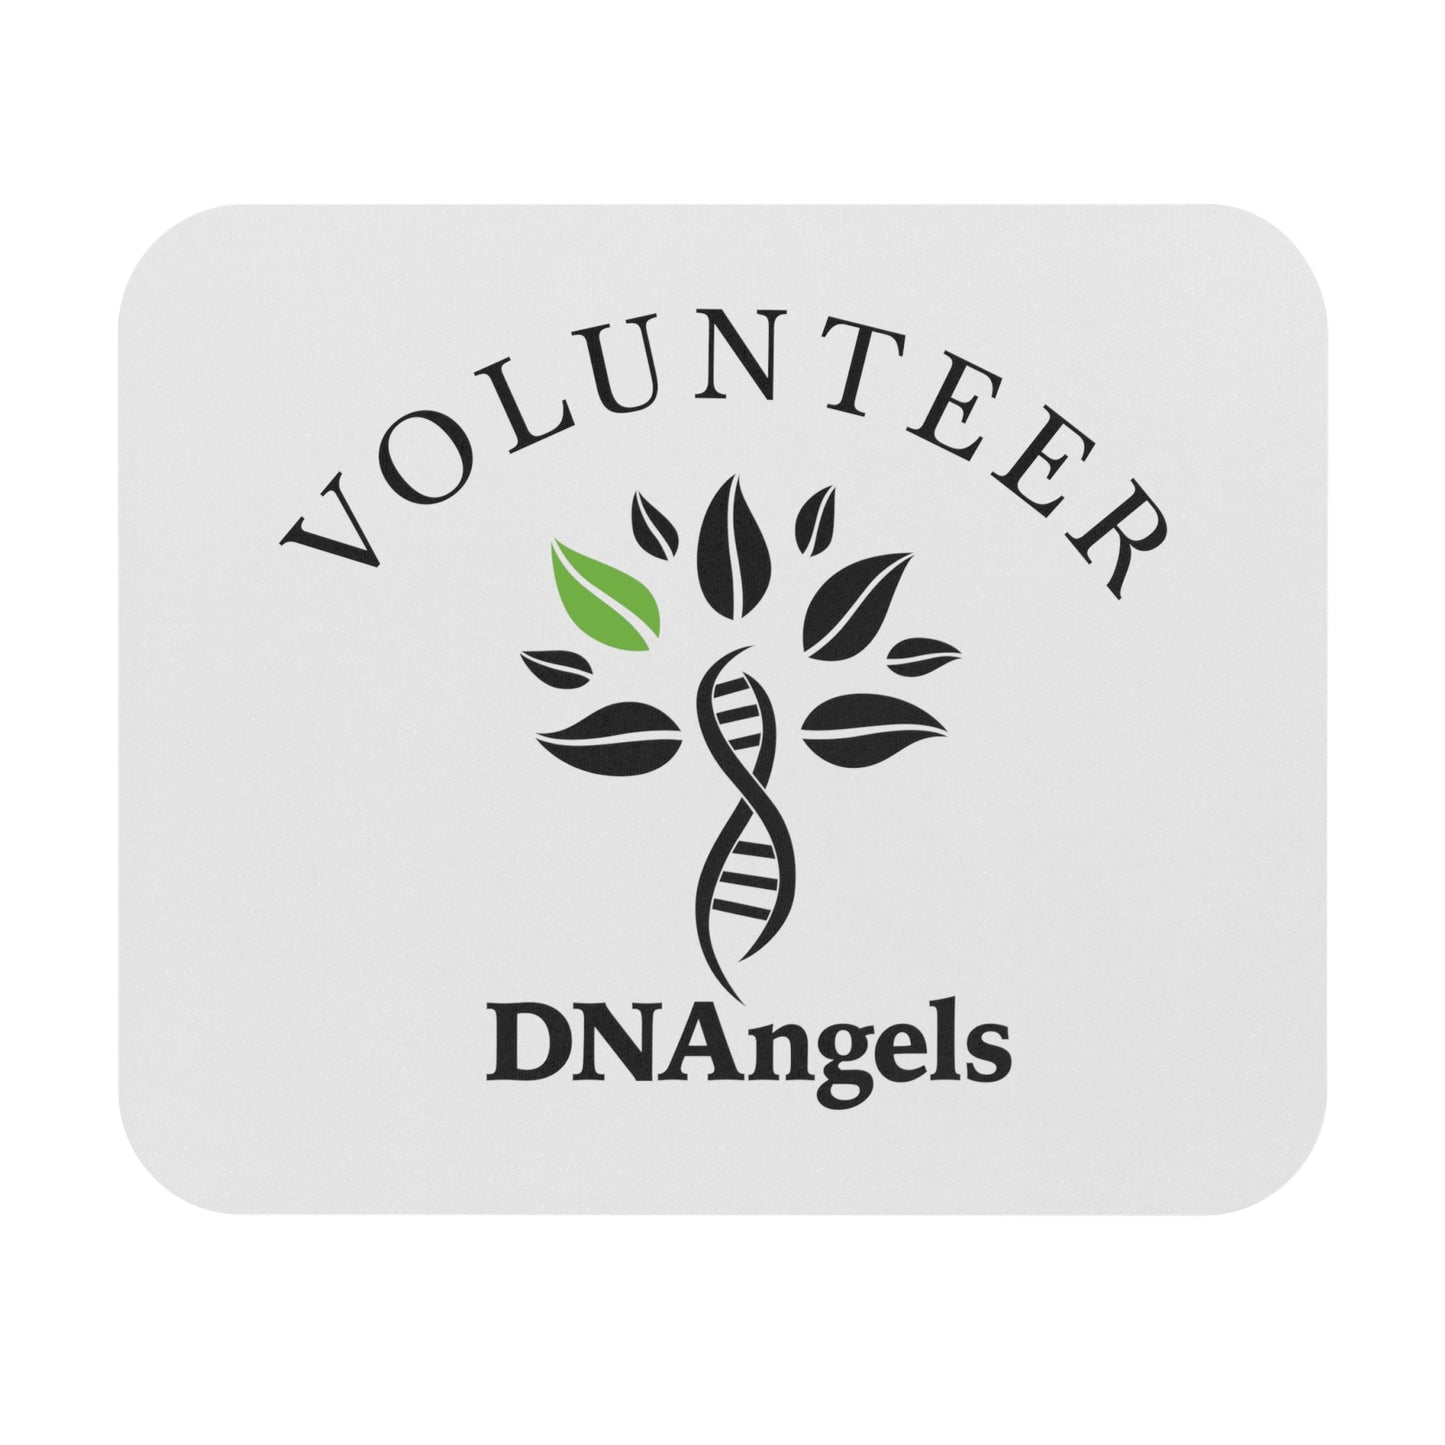 DNAngels Volunteer Mouse Pad